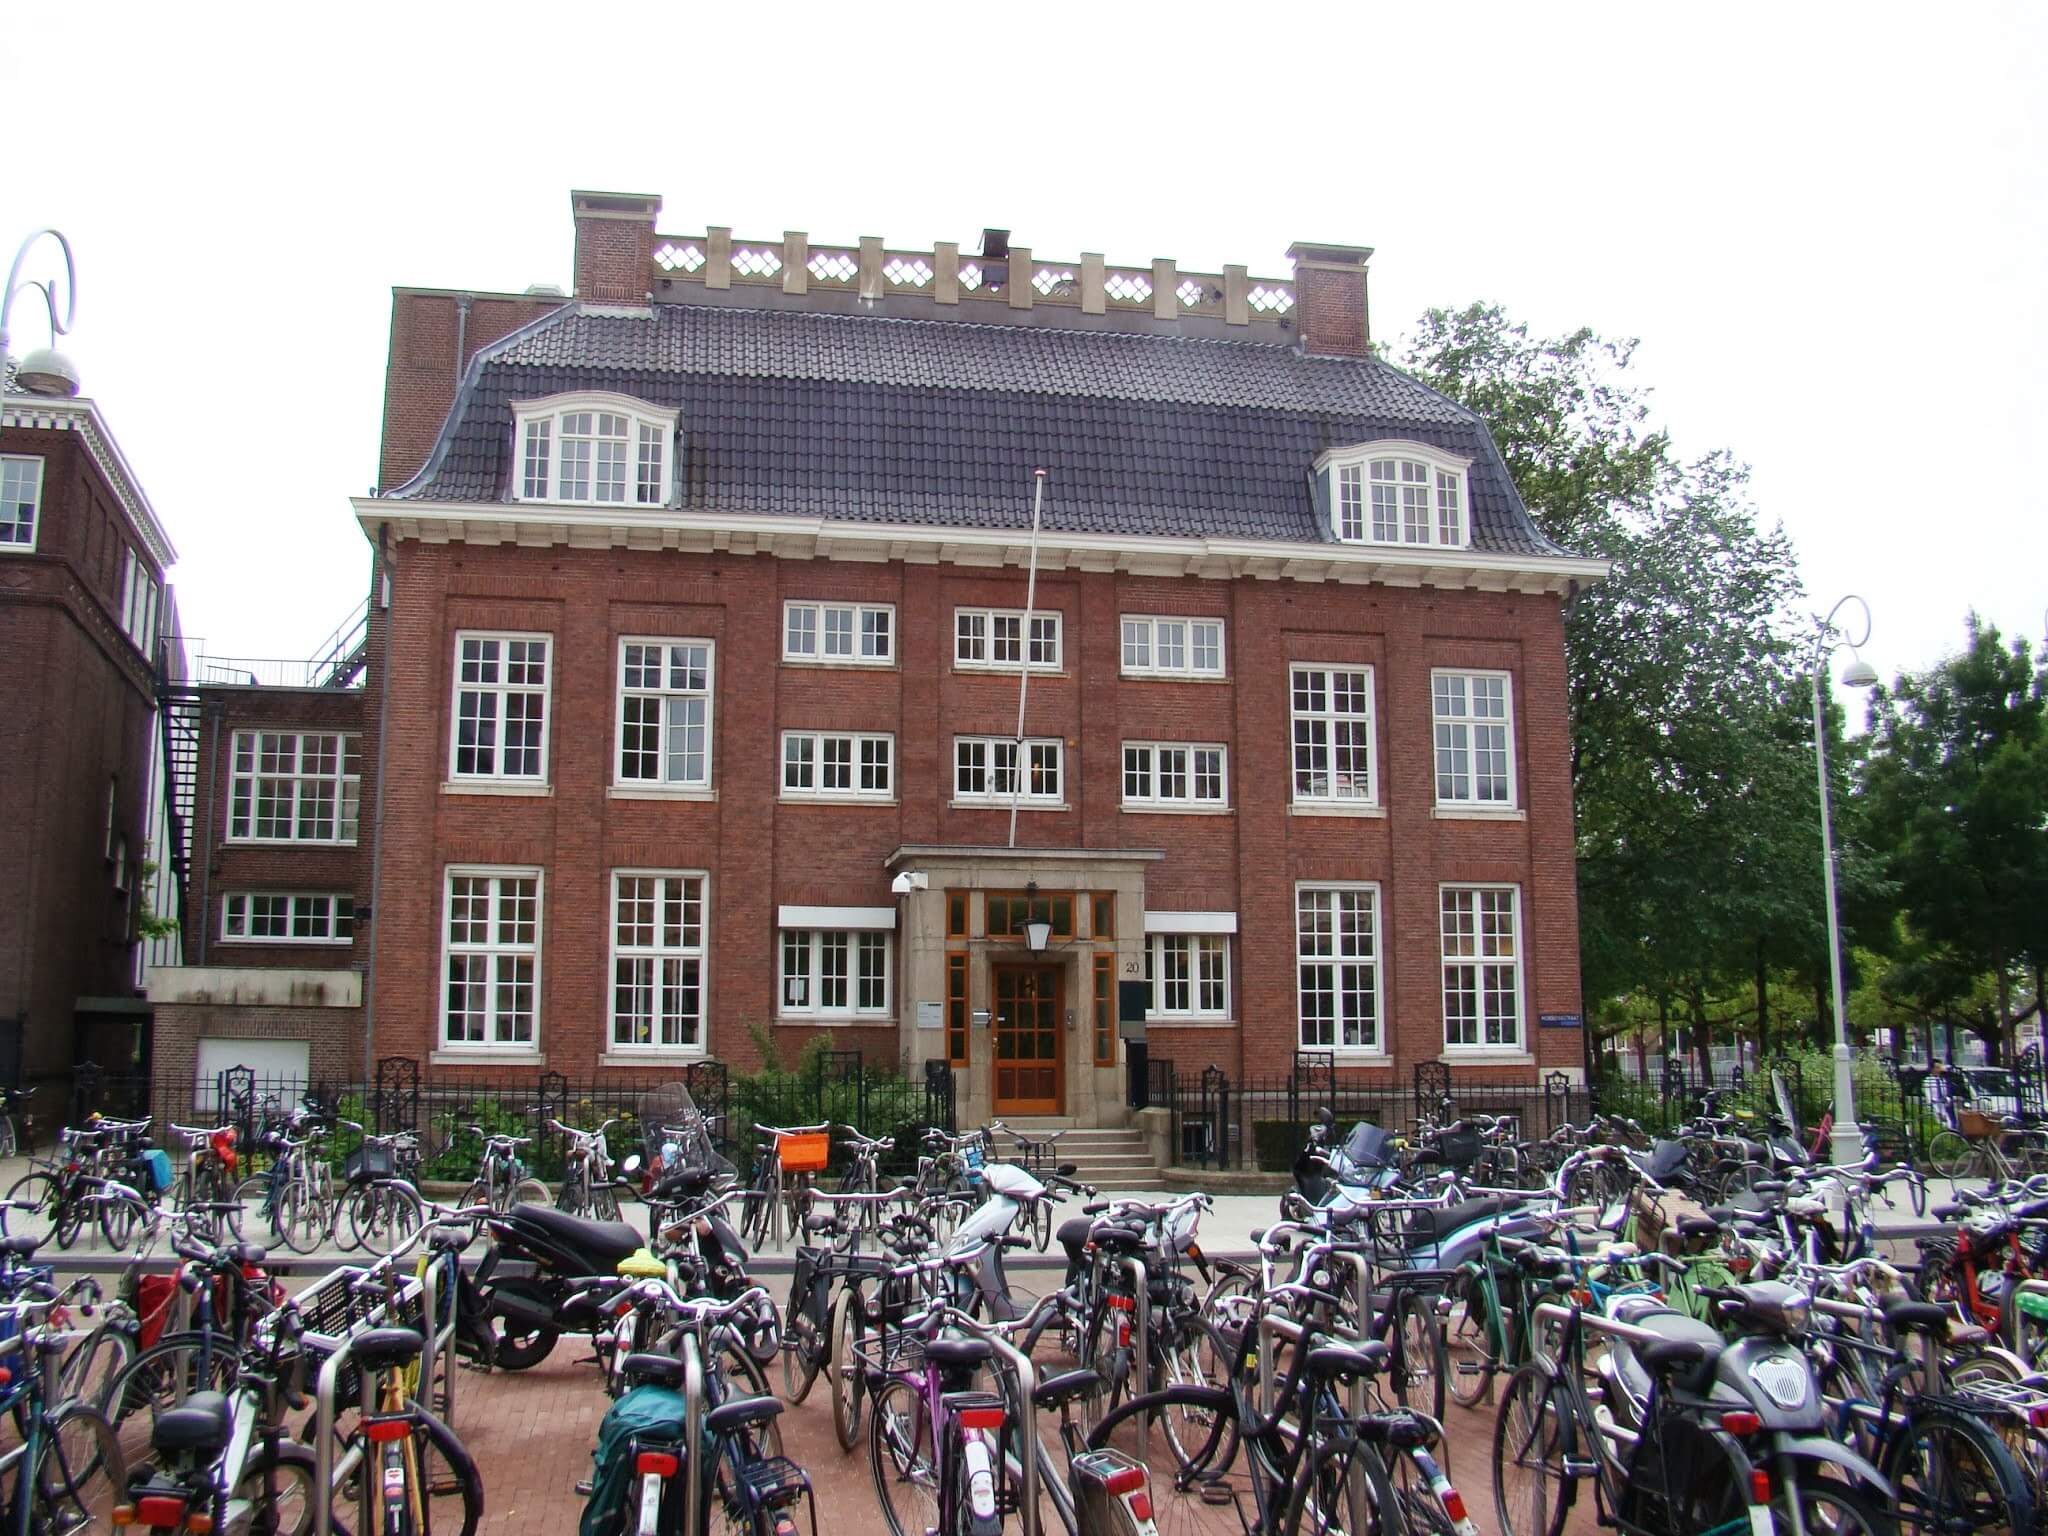 I love bikes, Amsterdam